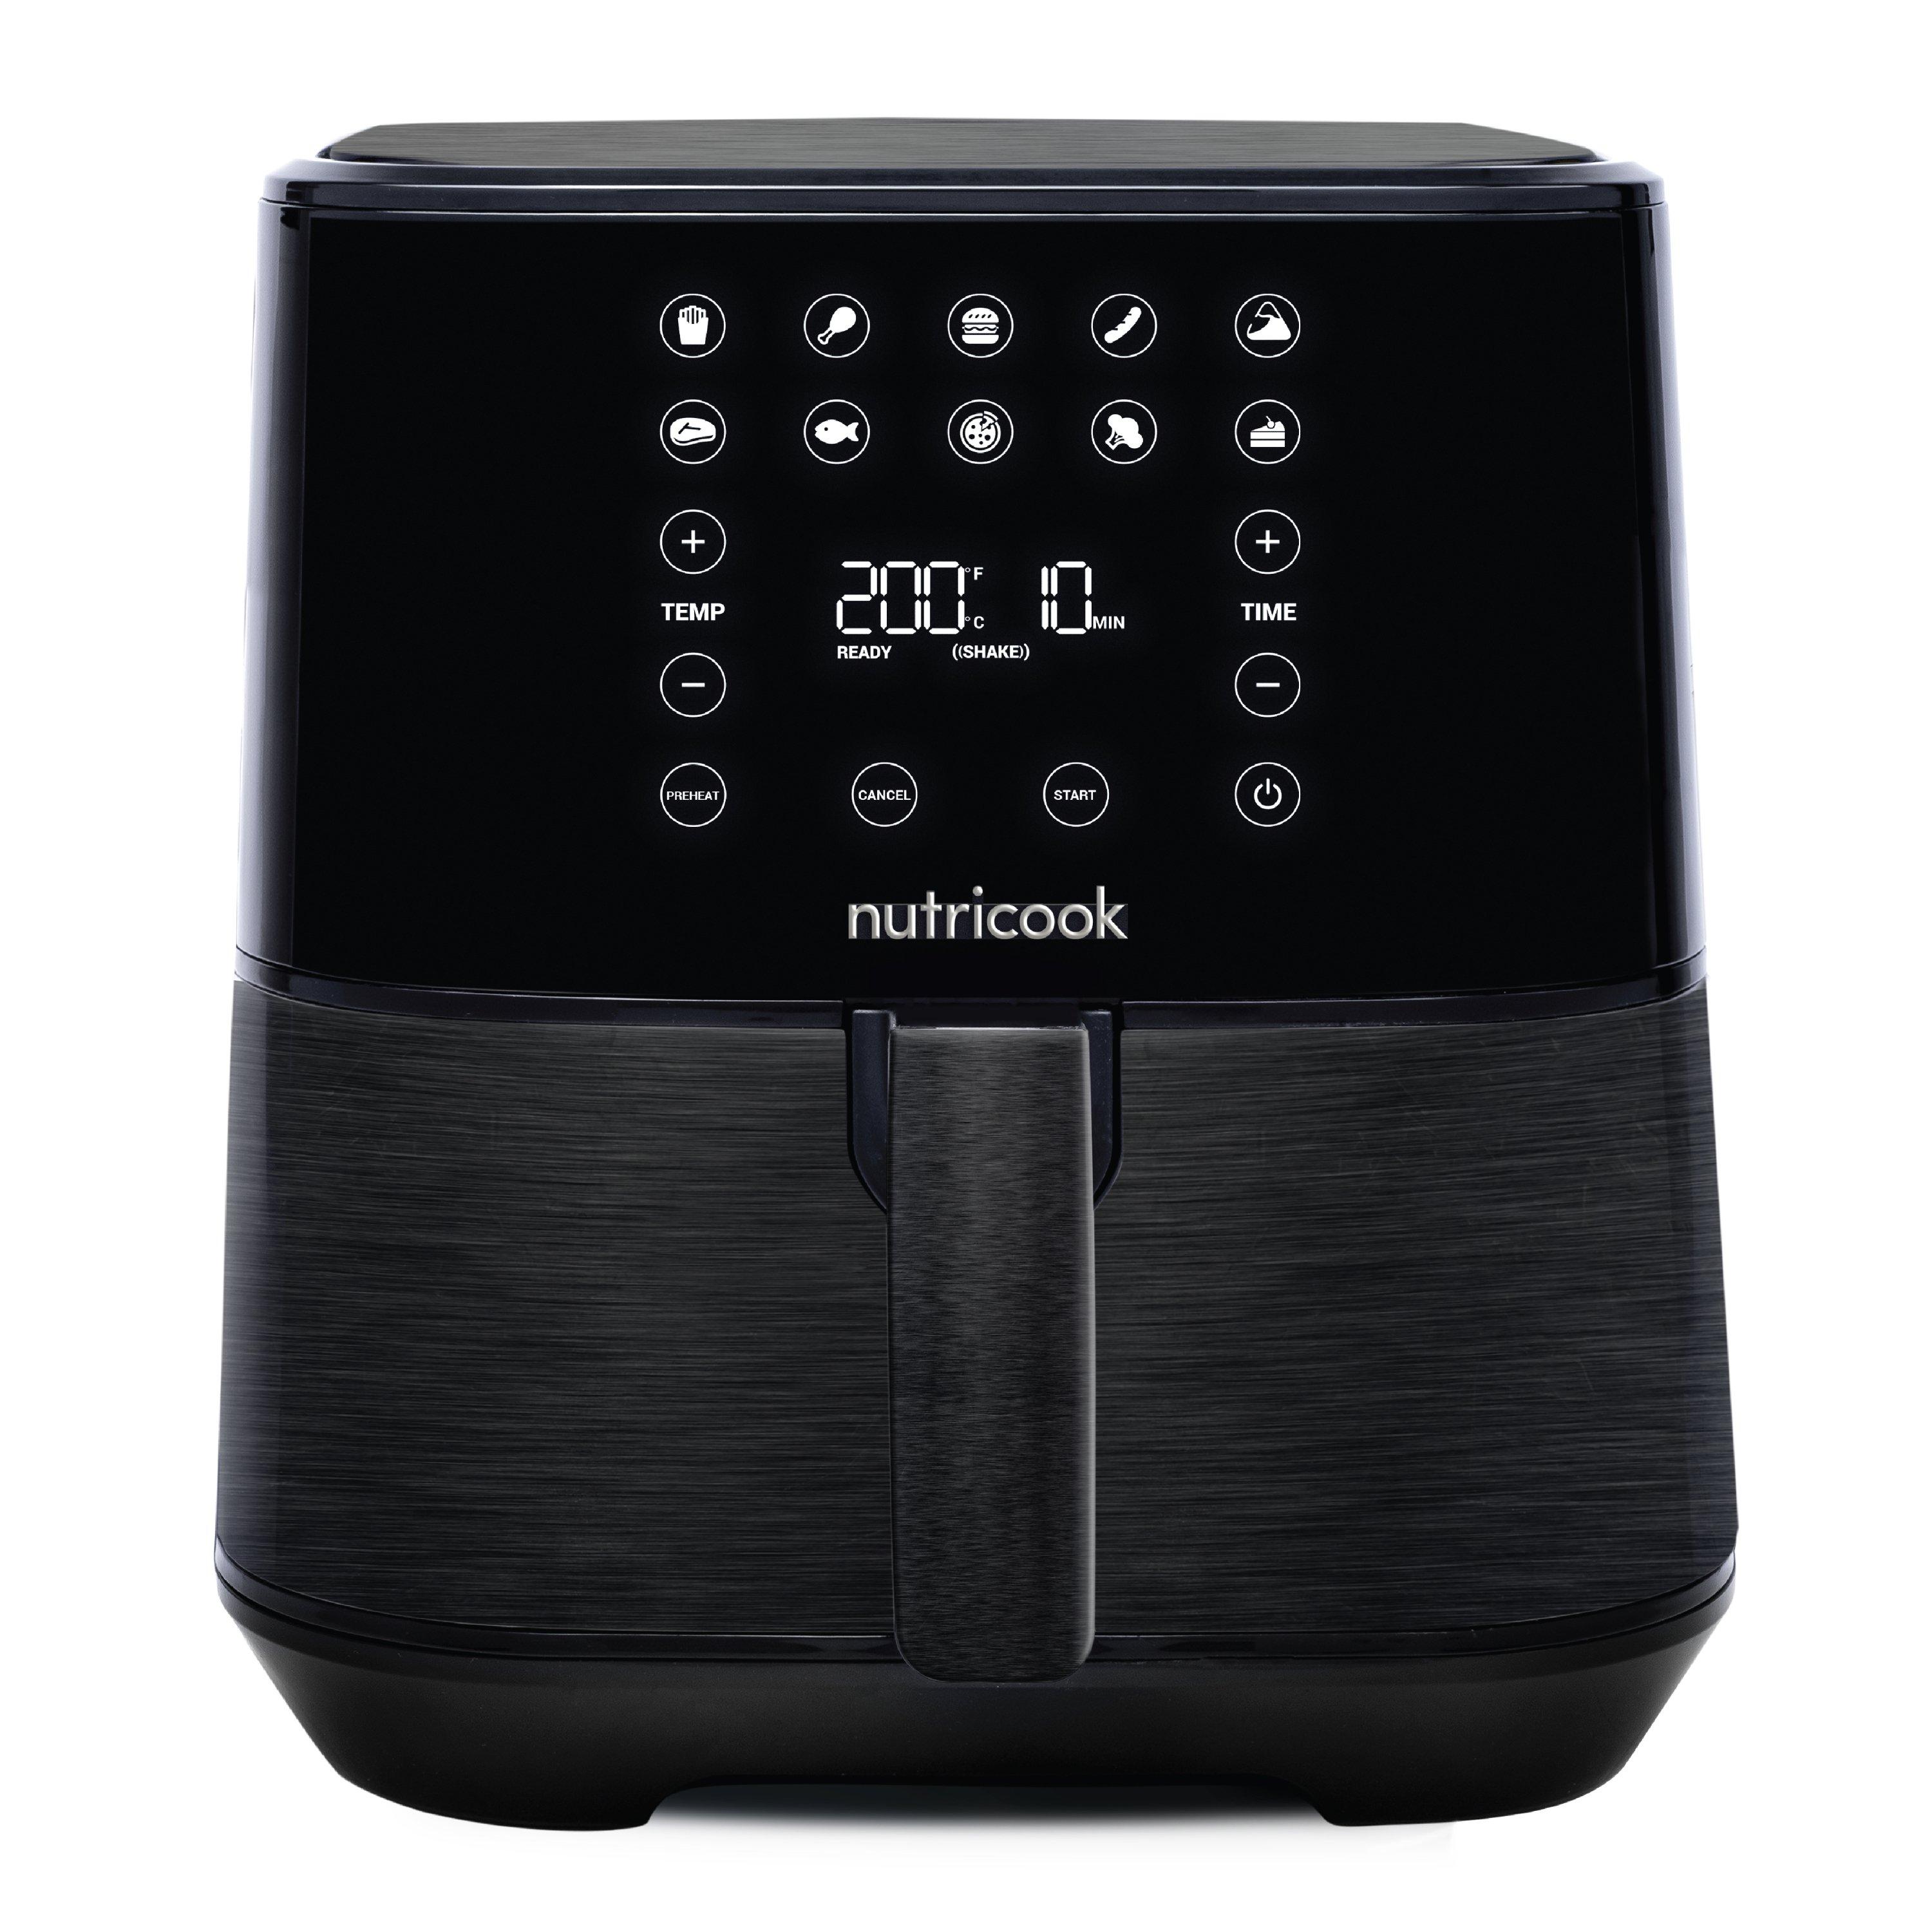 Buy Nutricook air fryer, 1700w, 5. 5 l, nc-af205k - black in Kuwait